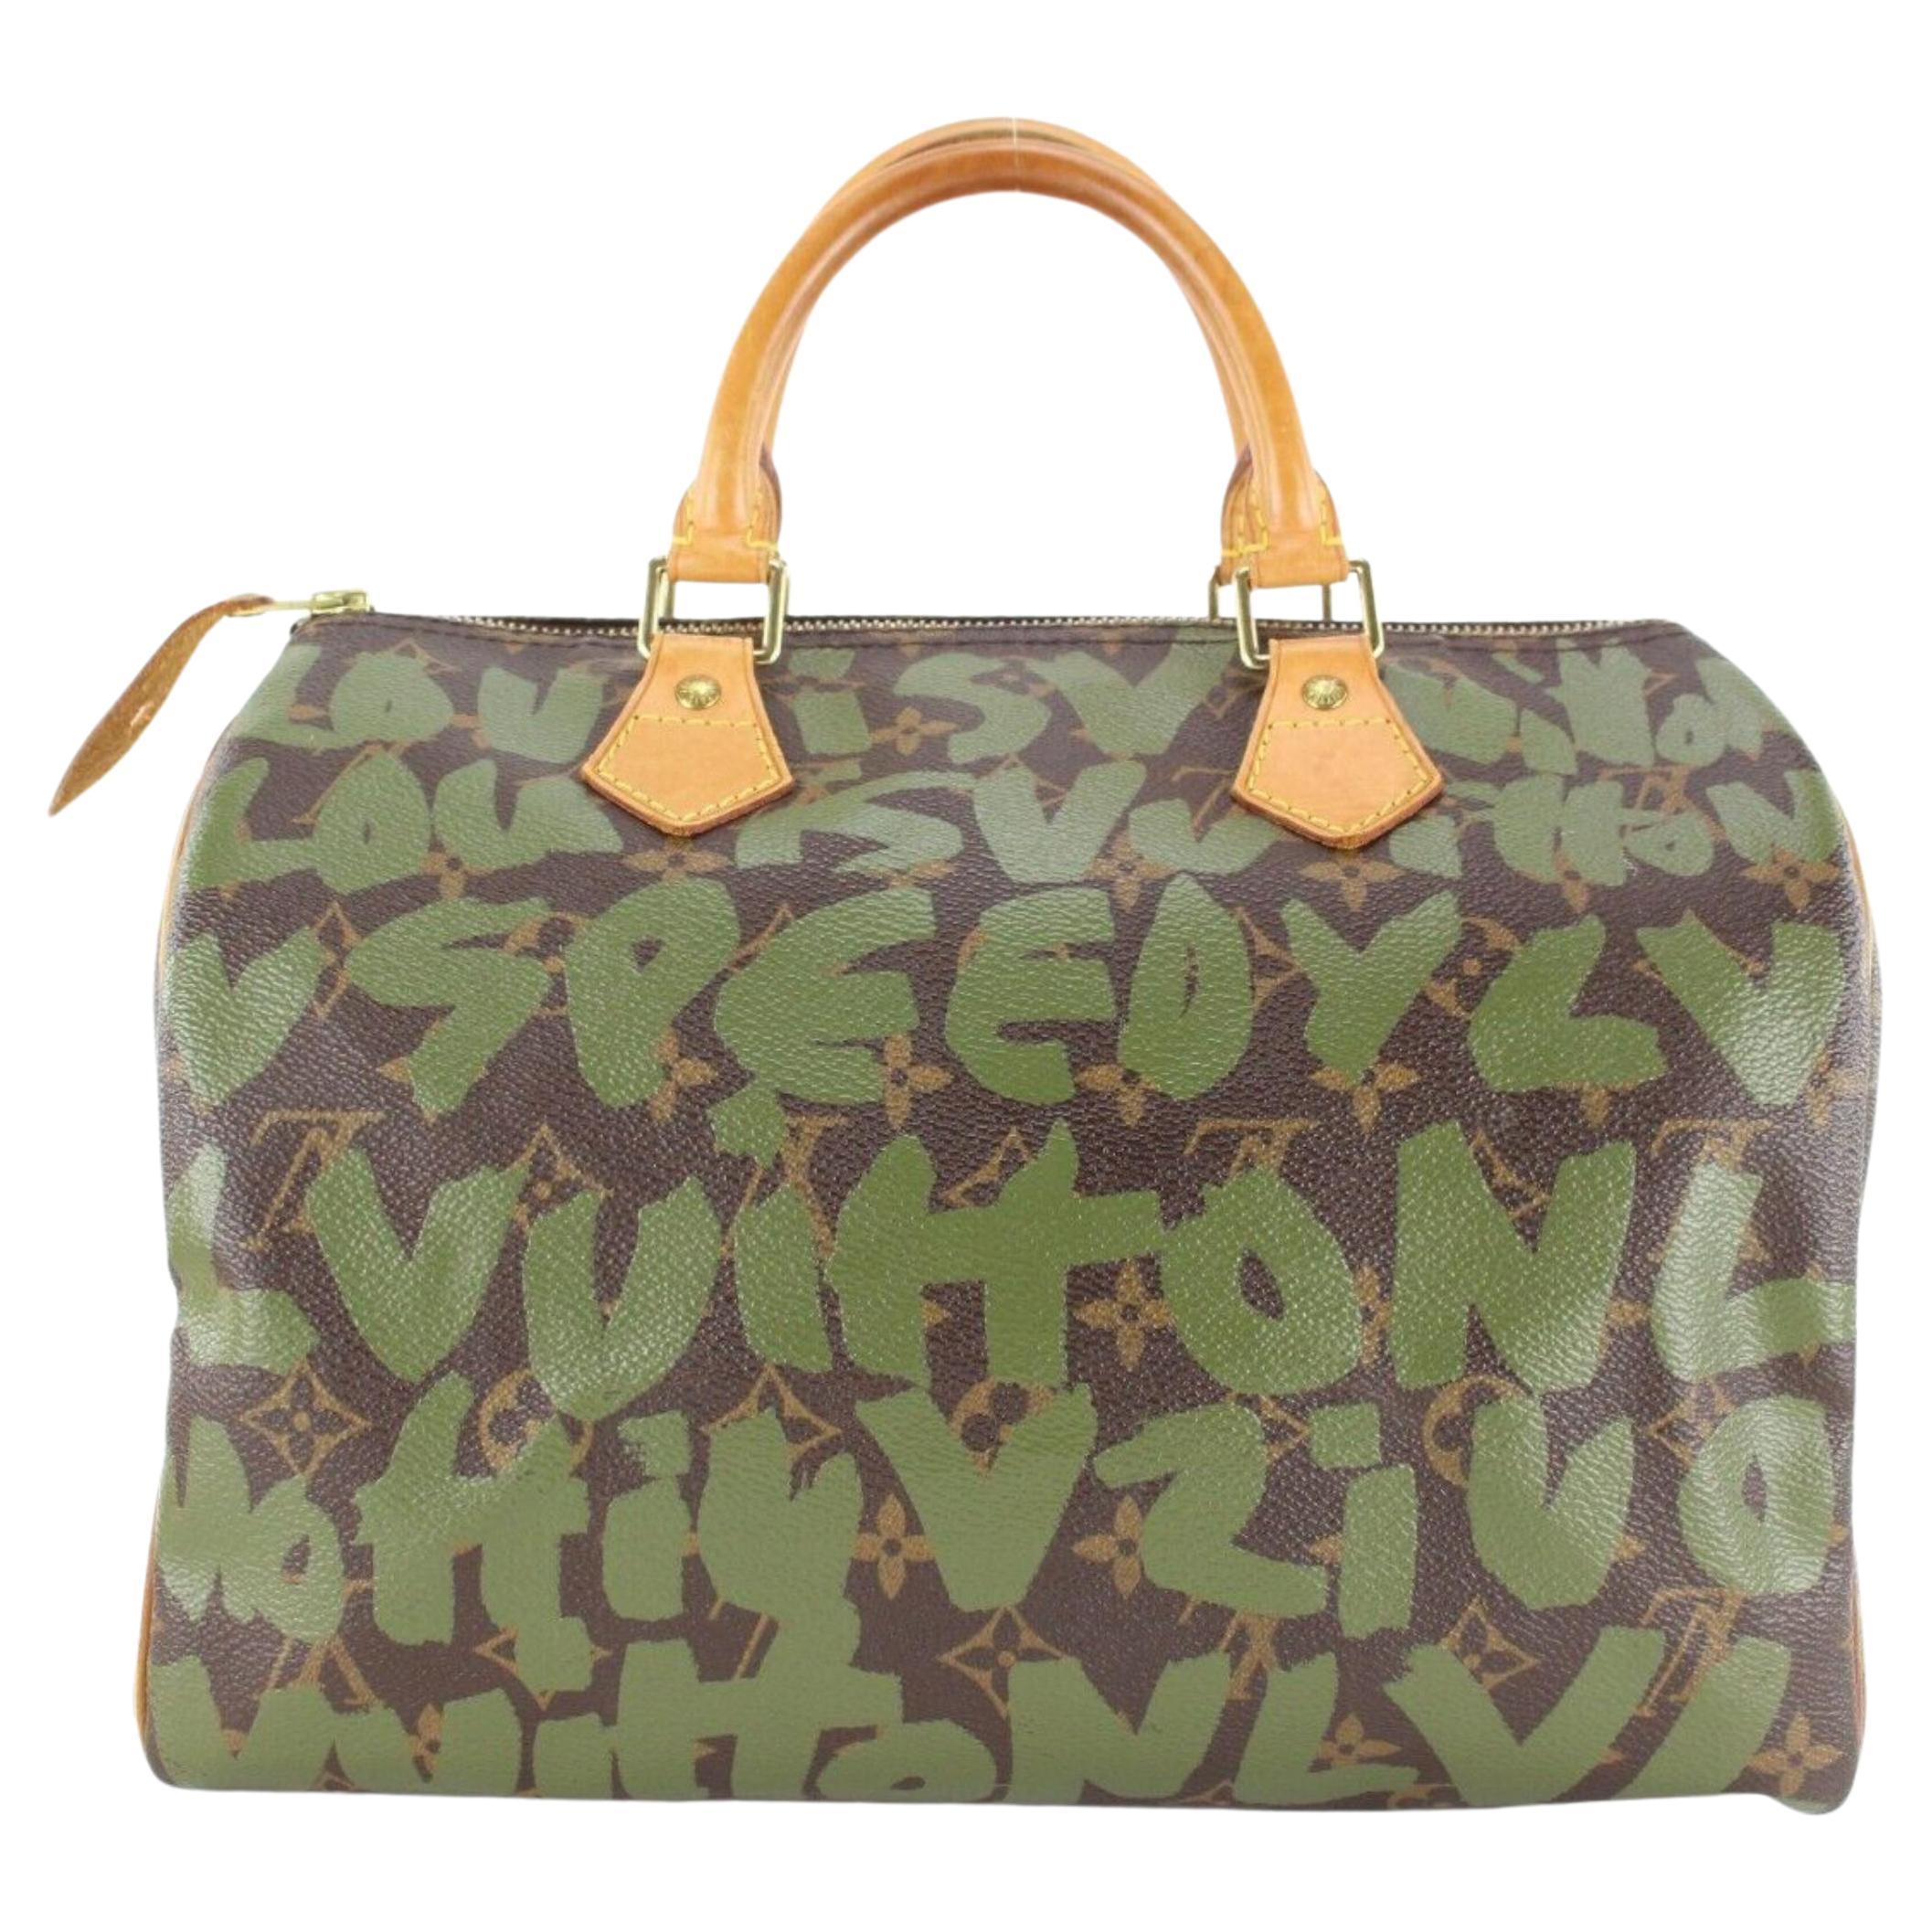 Louis Vuitton Stephen Sprouse Khaki Green Graffiti Speedy 30 Monogram 1LVJ1202